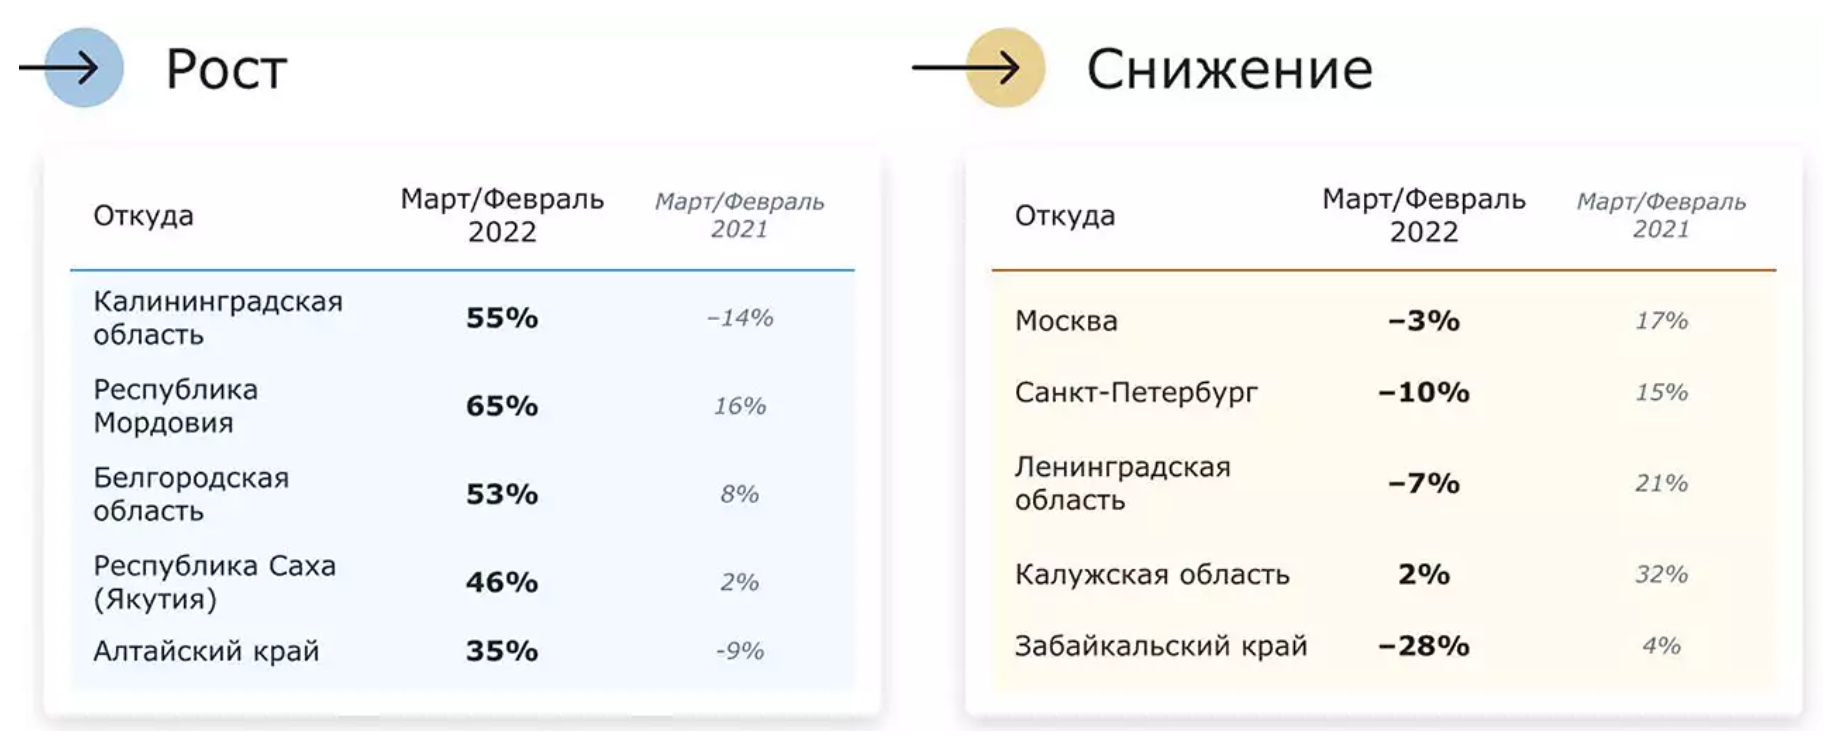 Размещение заявок из регионов РФ по данным ATI.SU